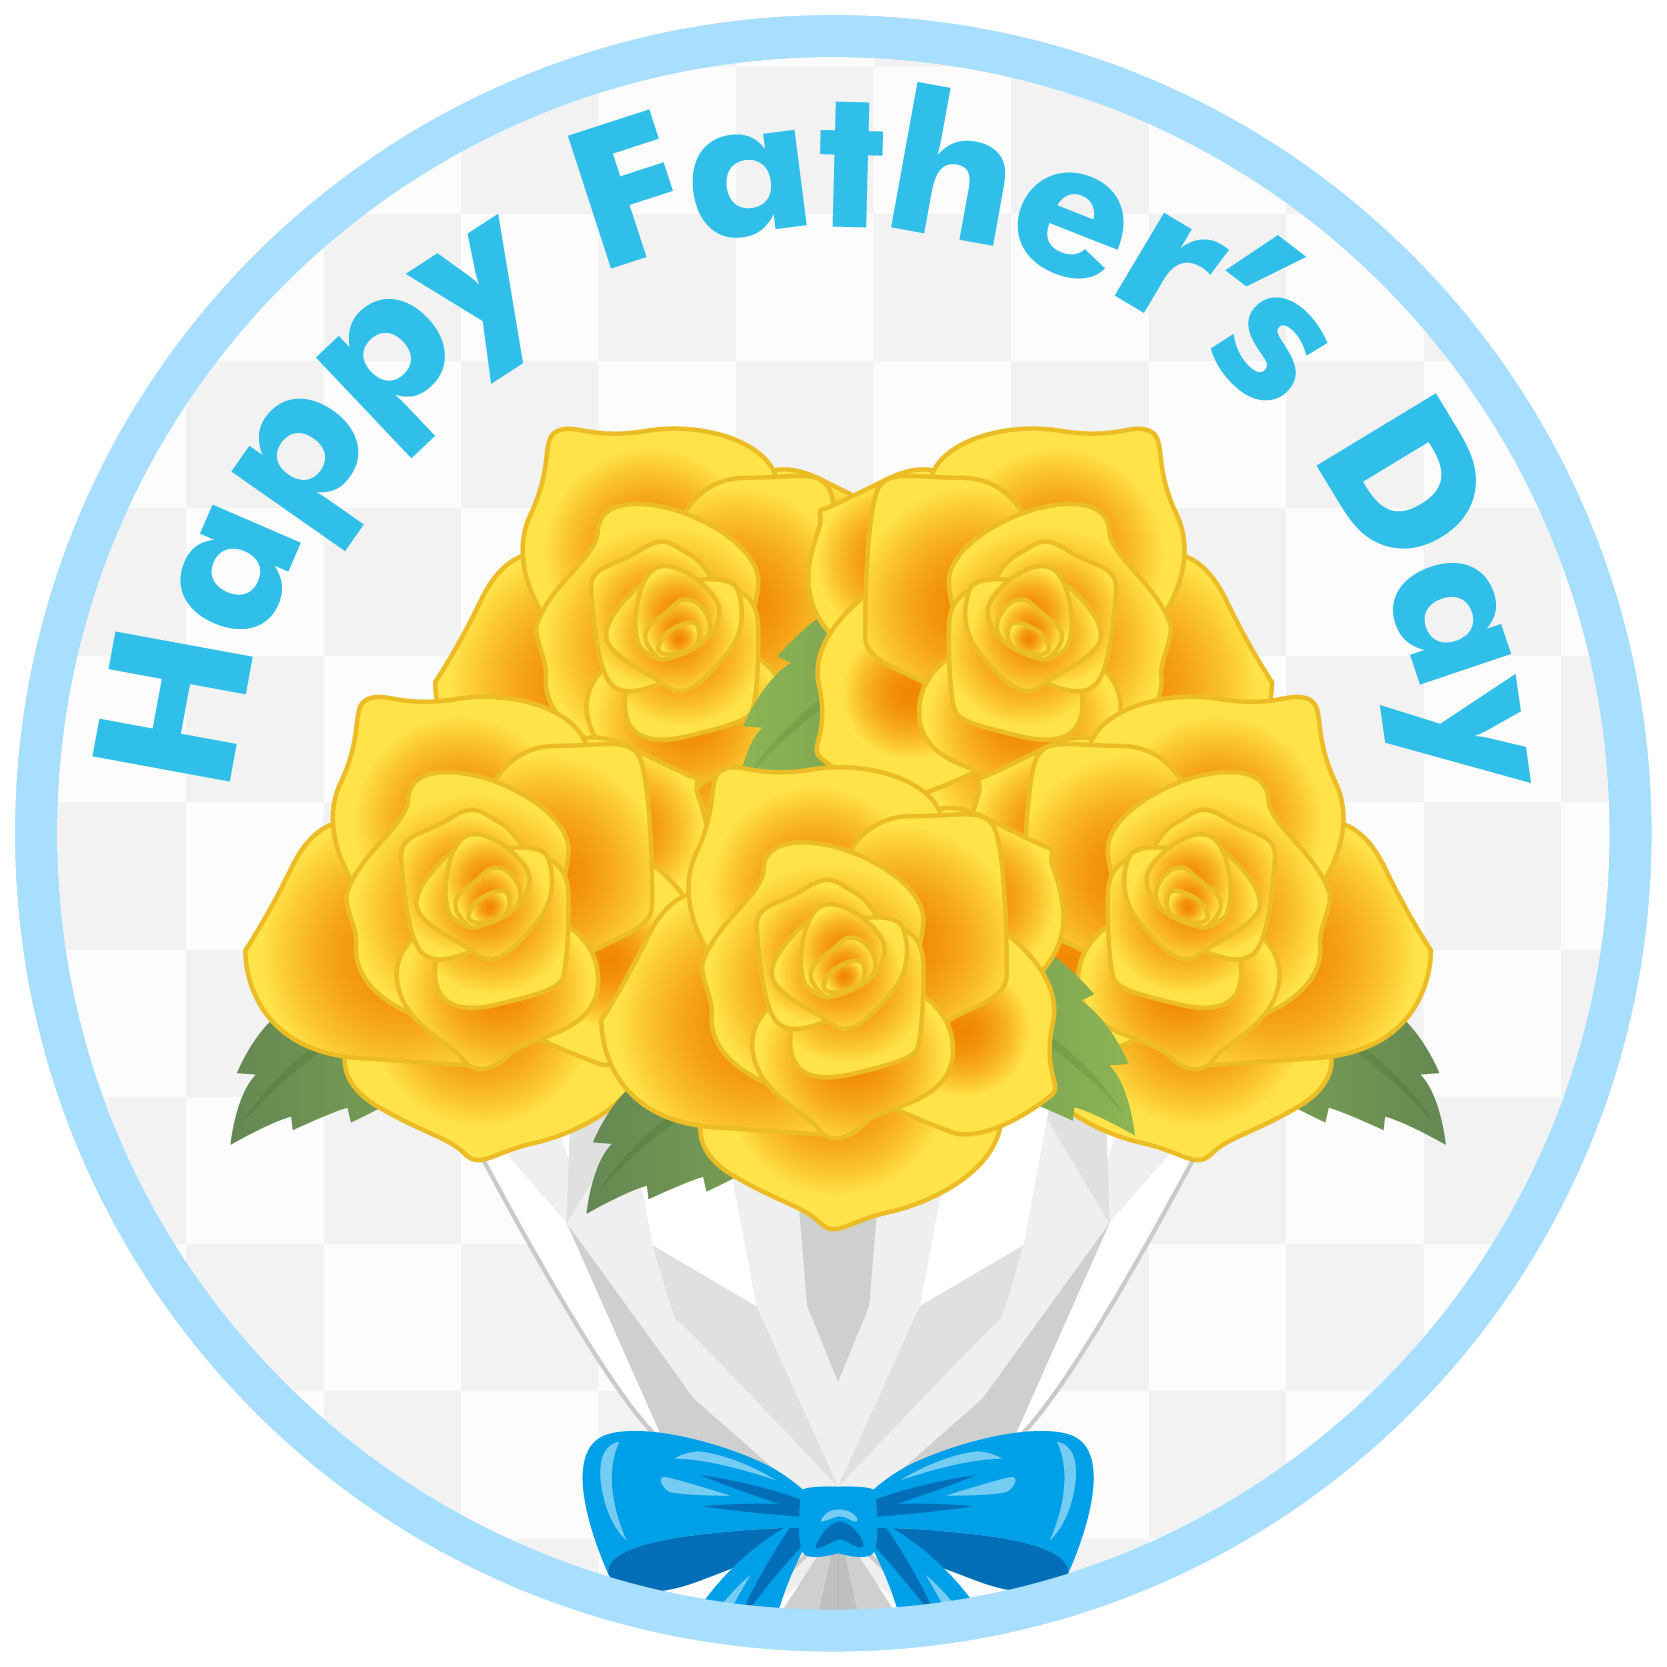 商用フリー 無料イラスト 父の日 黄色いバラの花束 Father S Day Chichinohi024 商用ok フリー素材集 ナイスな イラスト